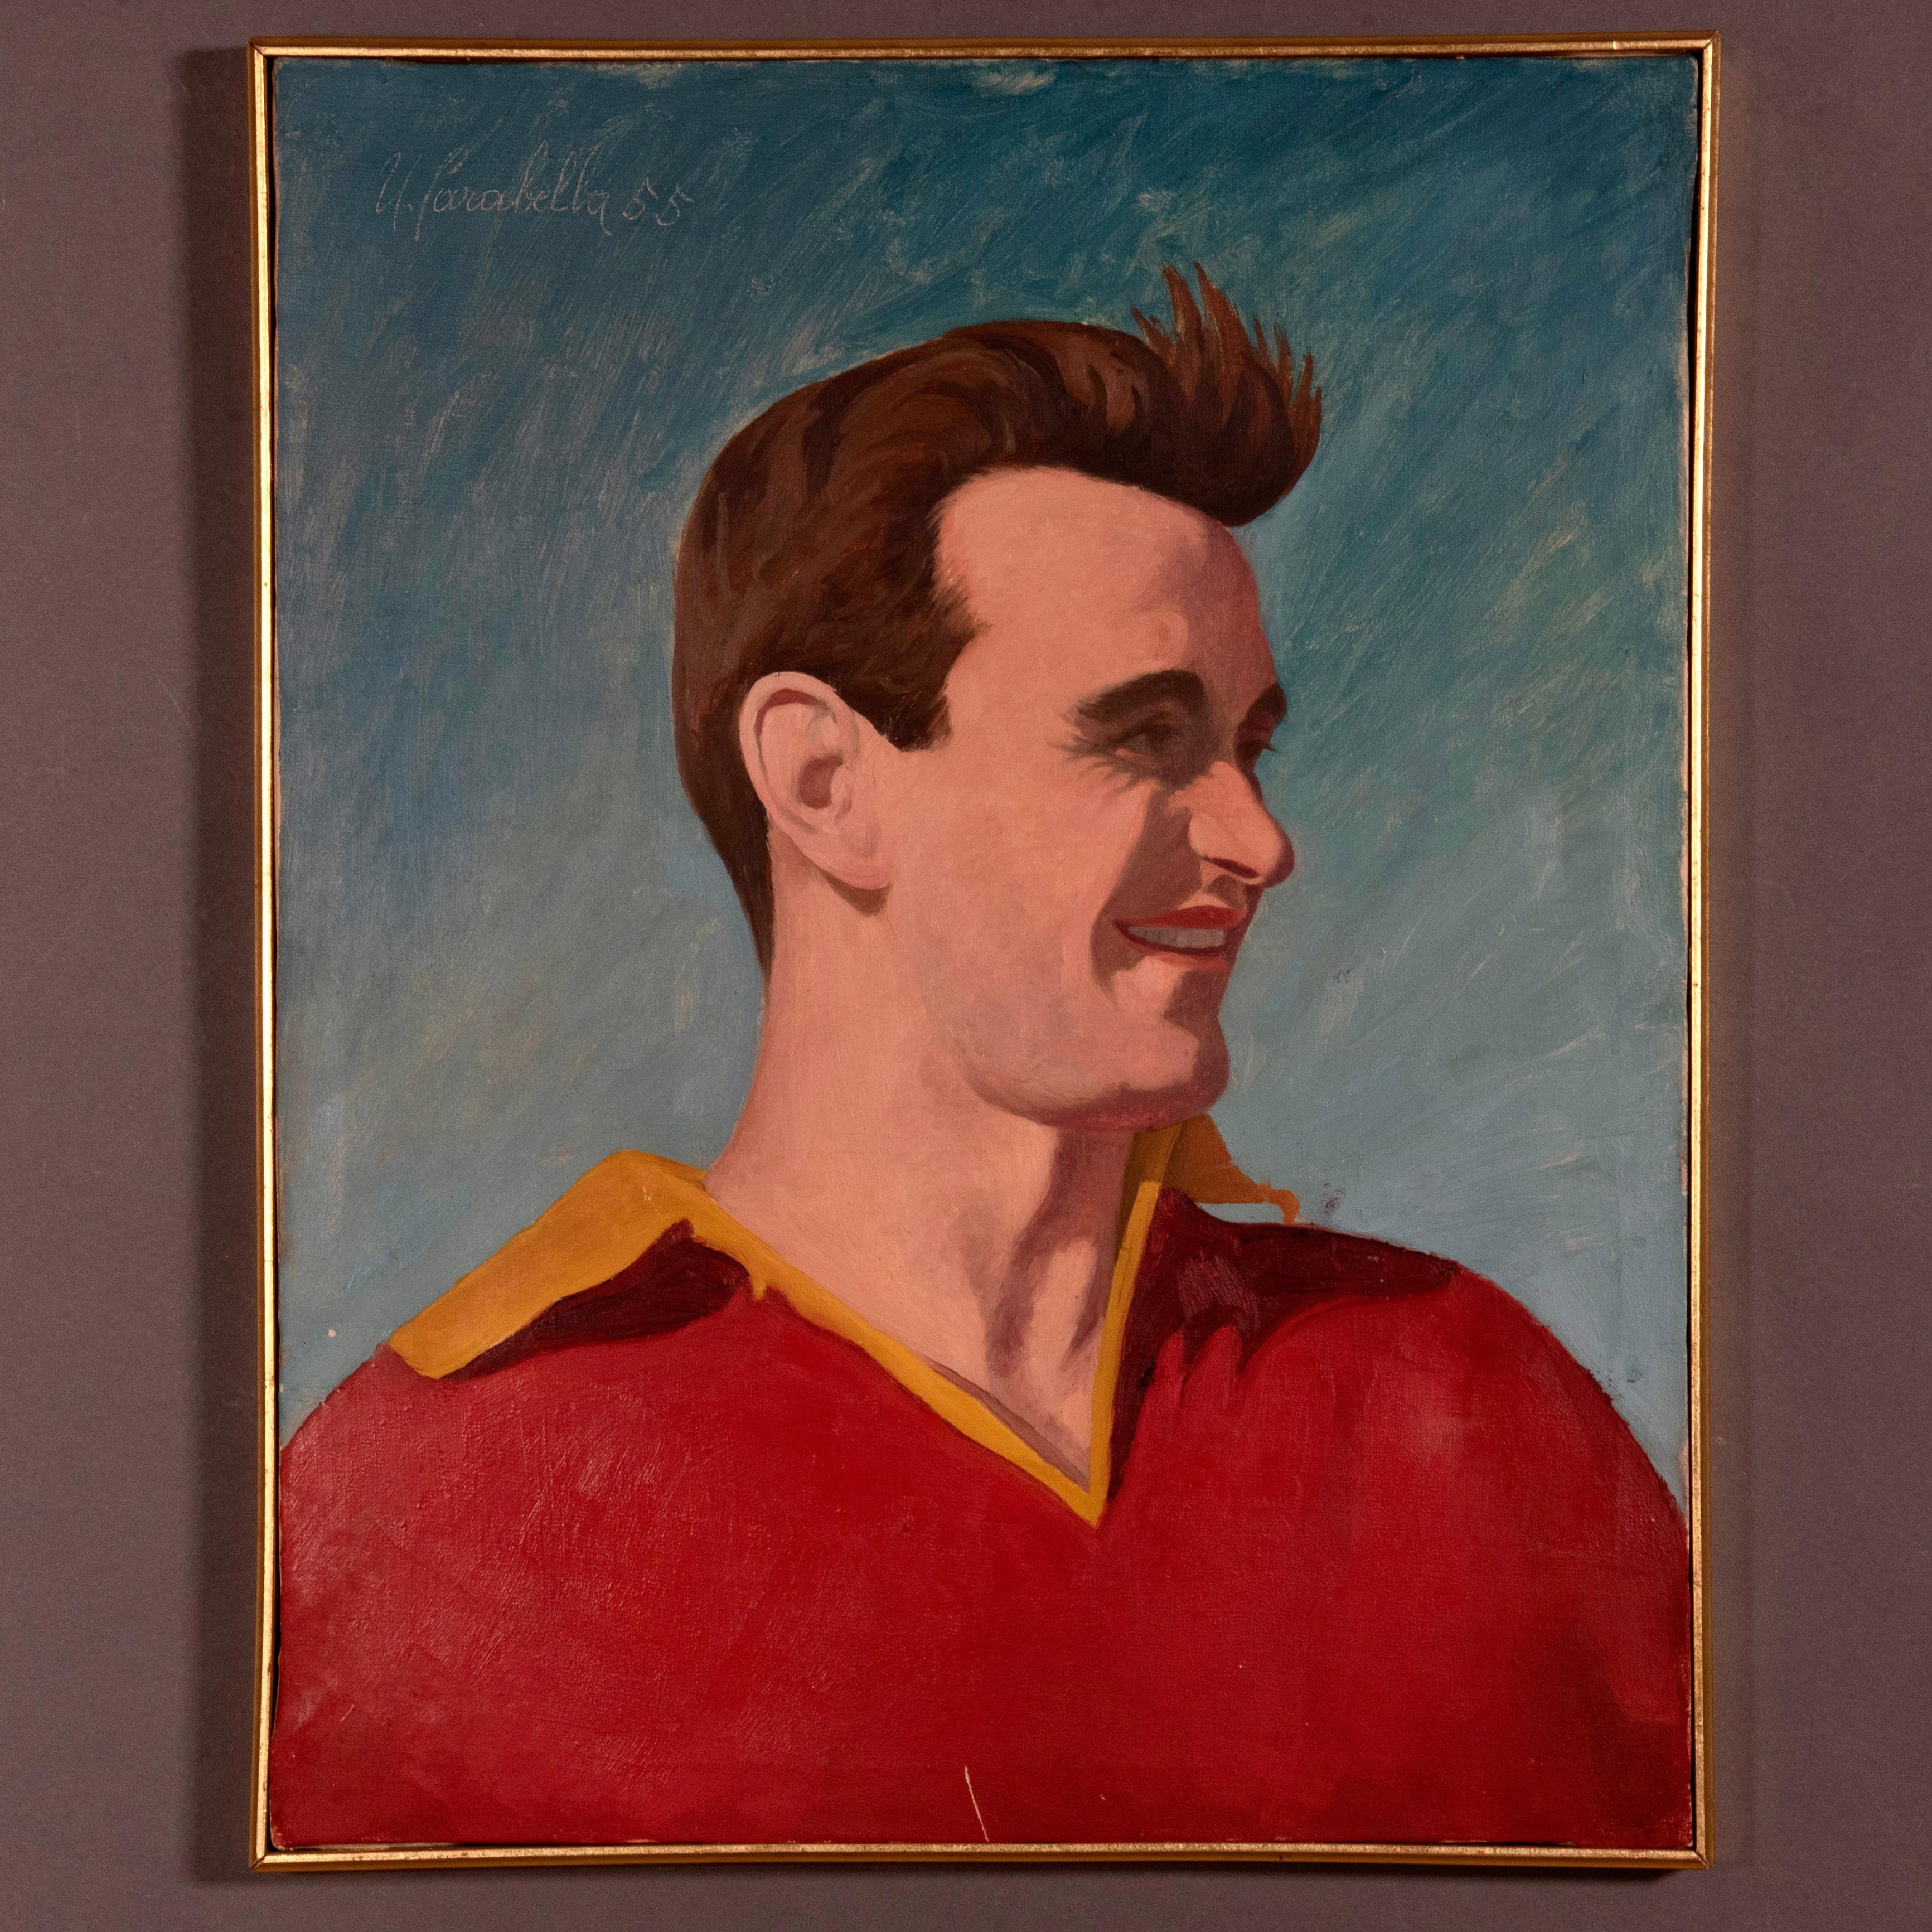 Wirklich beeindruckendes Ölgemälde auf Leinwand von dem großen modernen italienischen Künstler Umberto Carabella (Paliano, Frosinone 1912-1956).
Dies ist ein intensives Porträt des großen Fußballspielers Giancarlo 'Carlo' Galli, der wegen seiner